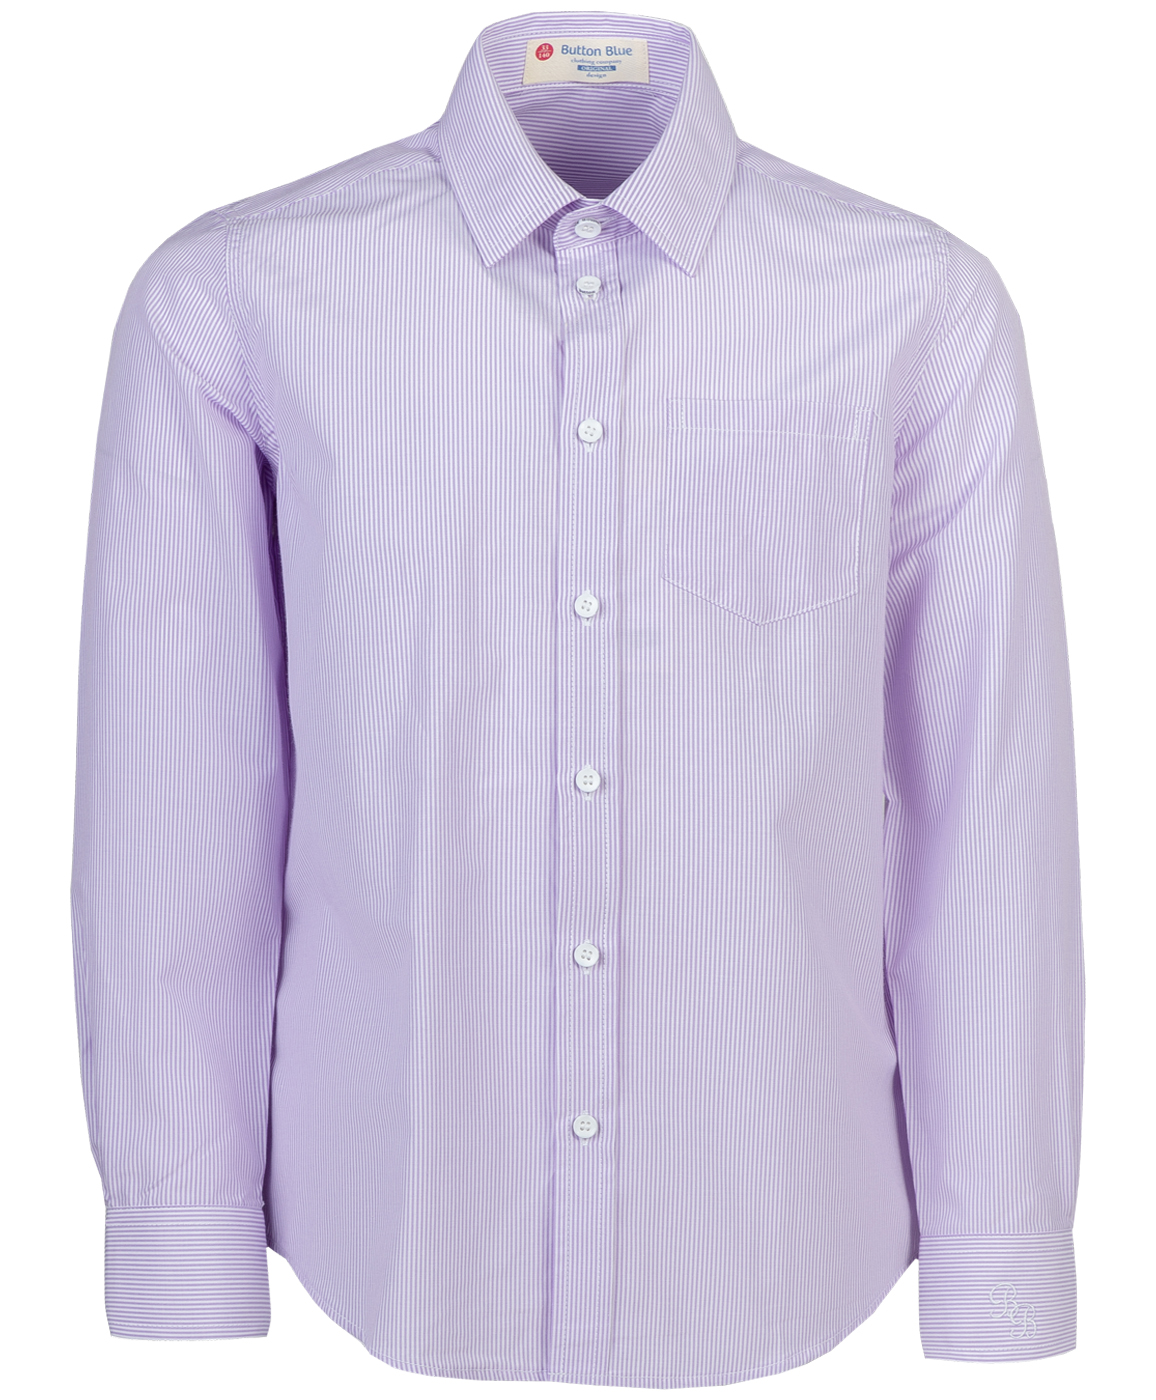 фото Рубашка для мальчиков button blue, цв. сиреневый, р-р 128